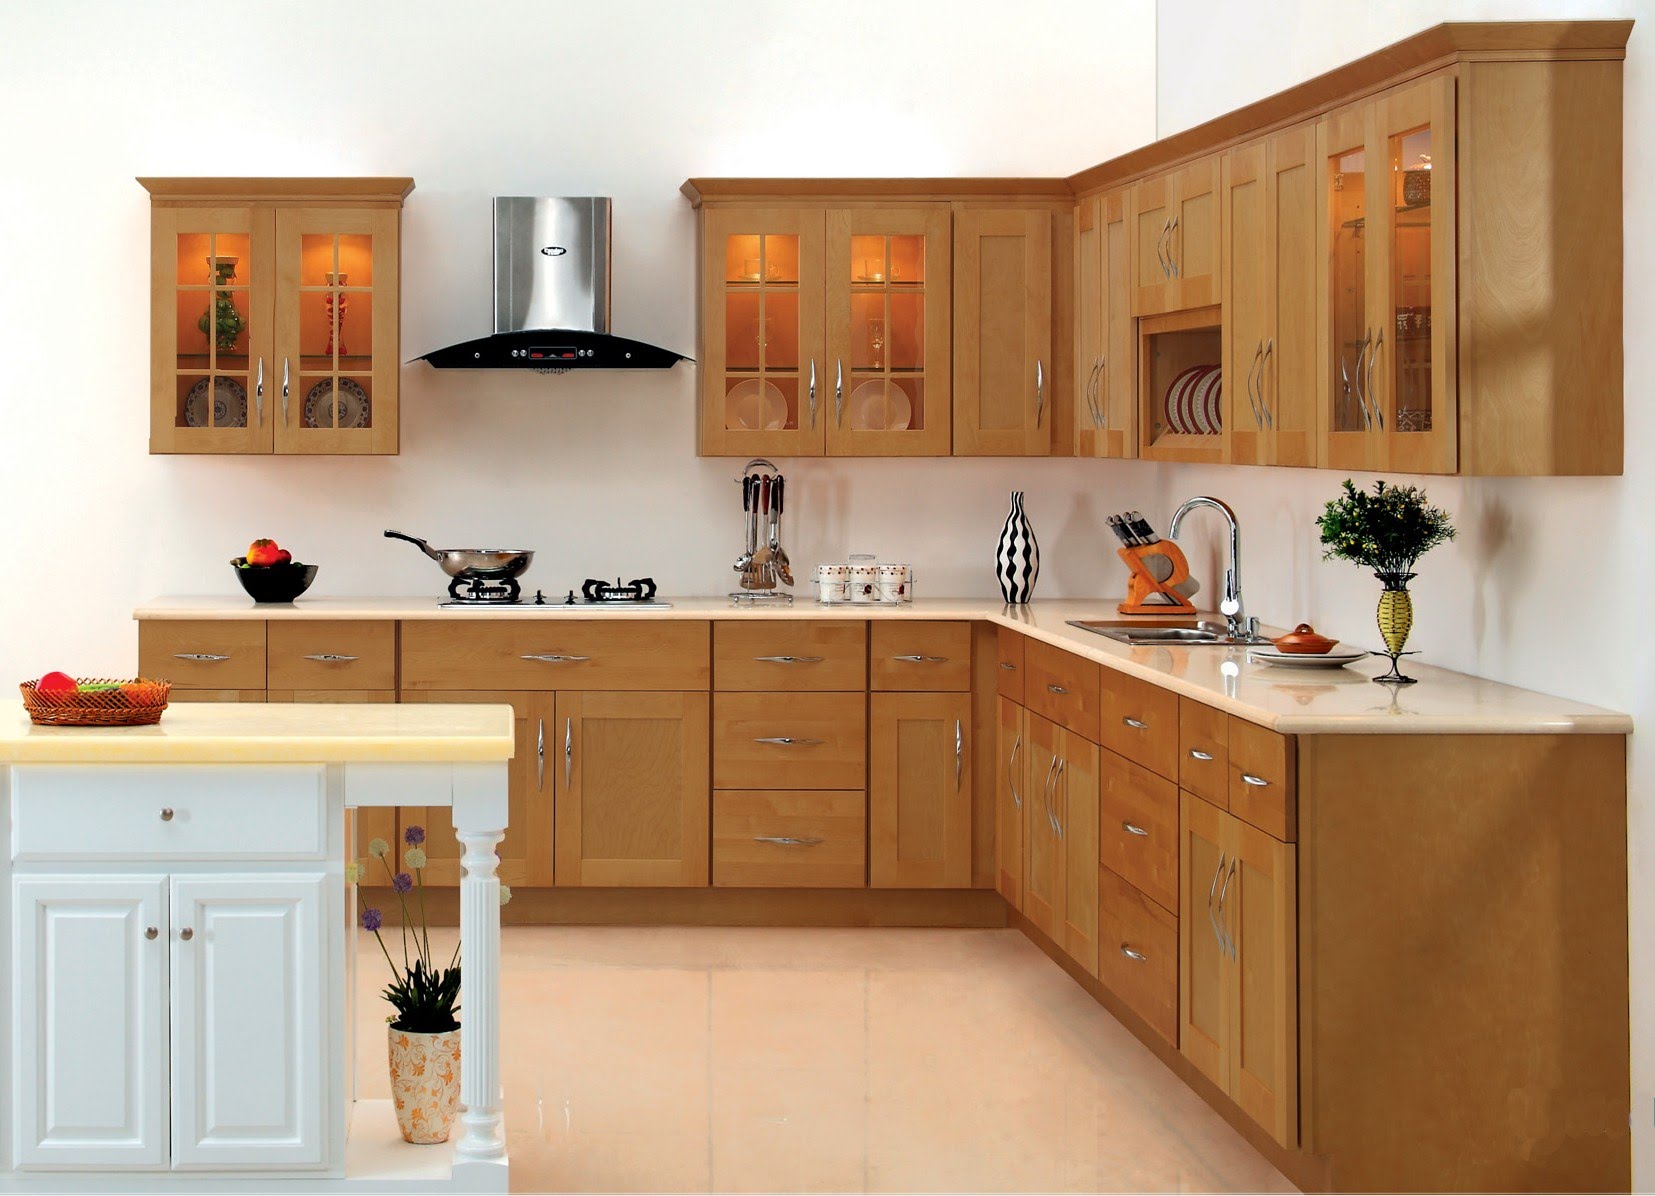 kitchen cabinets design kitchen cabinet design - youtube DQEJGLB